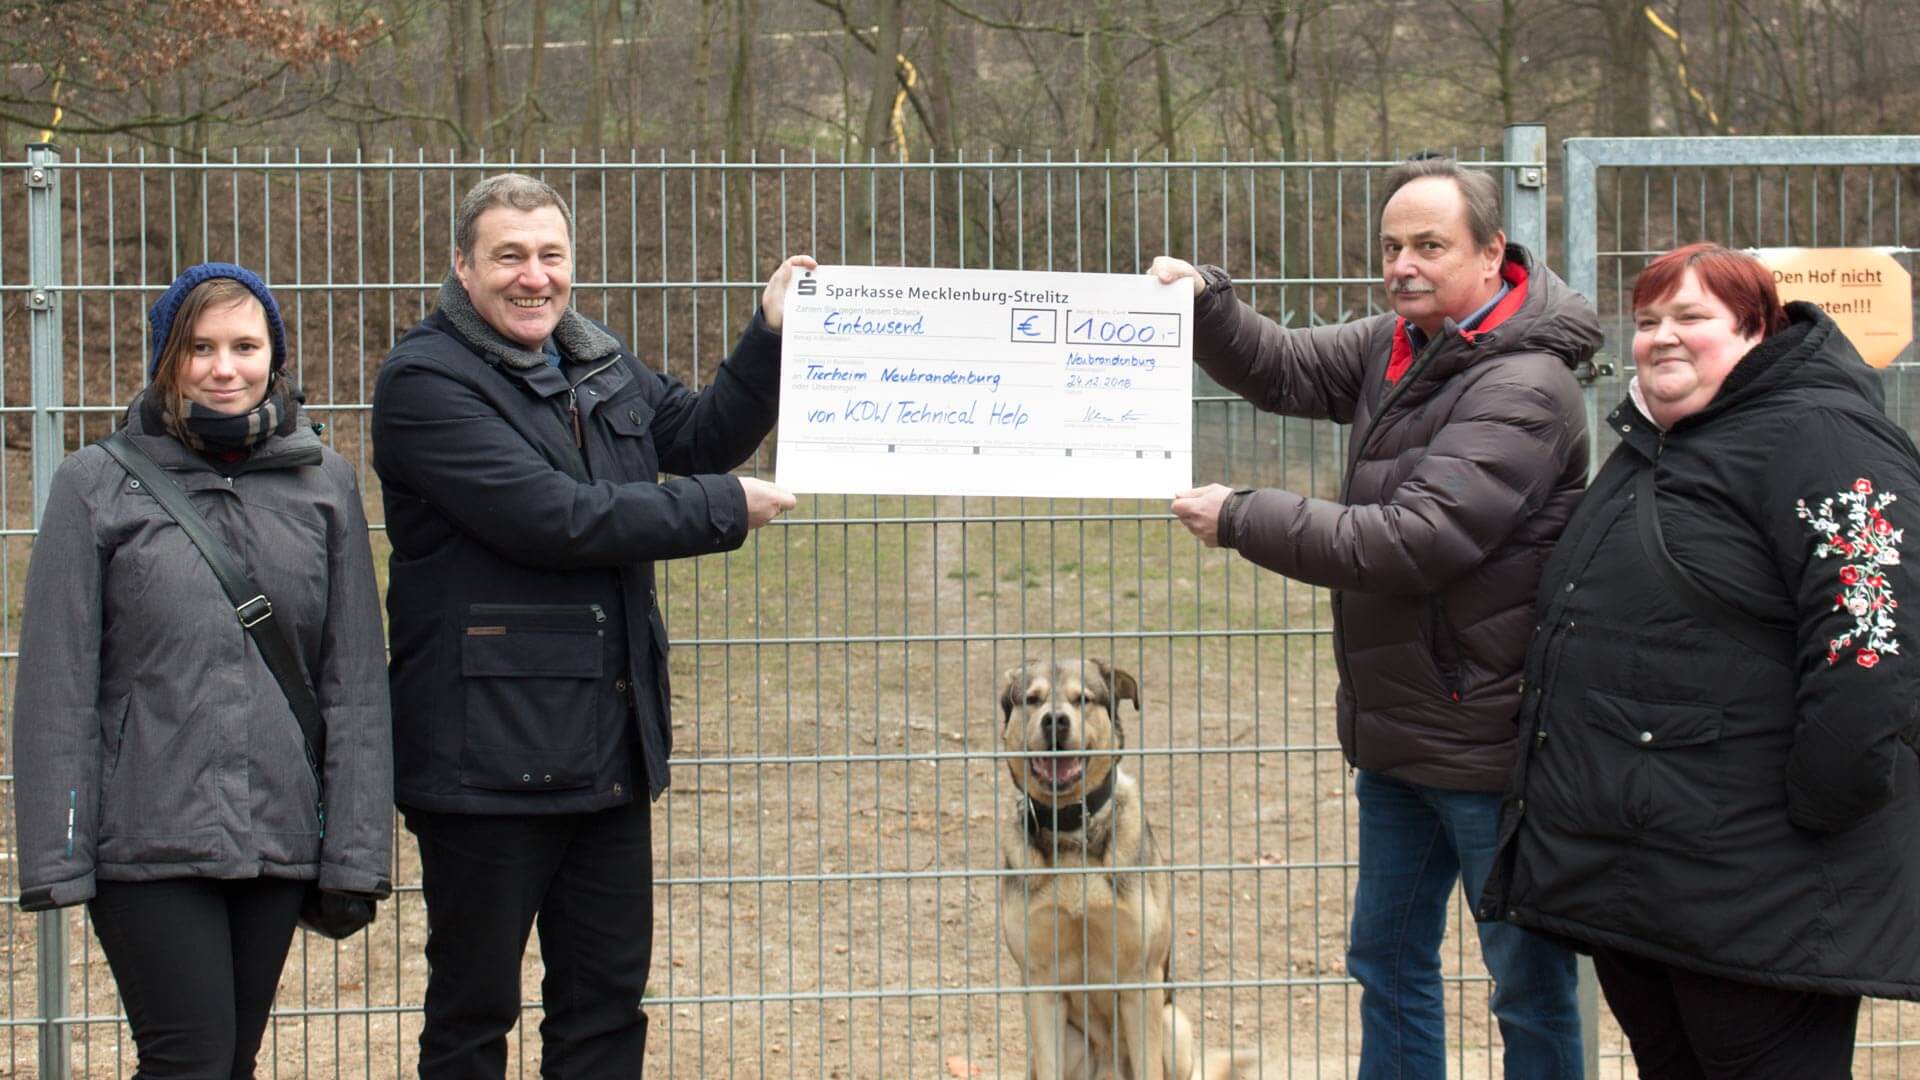 KDW Technical Help spendet 1000 € an das Tierheim in Neubrandenburg